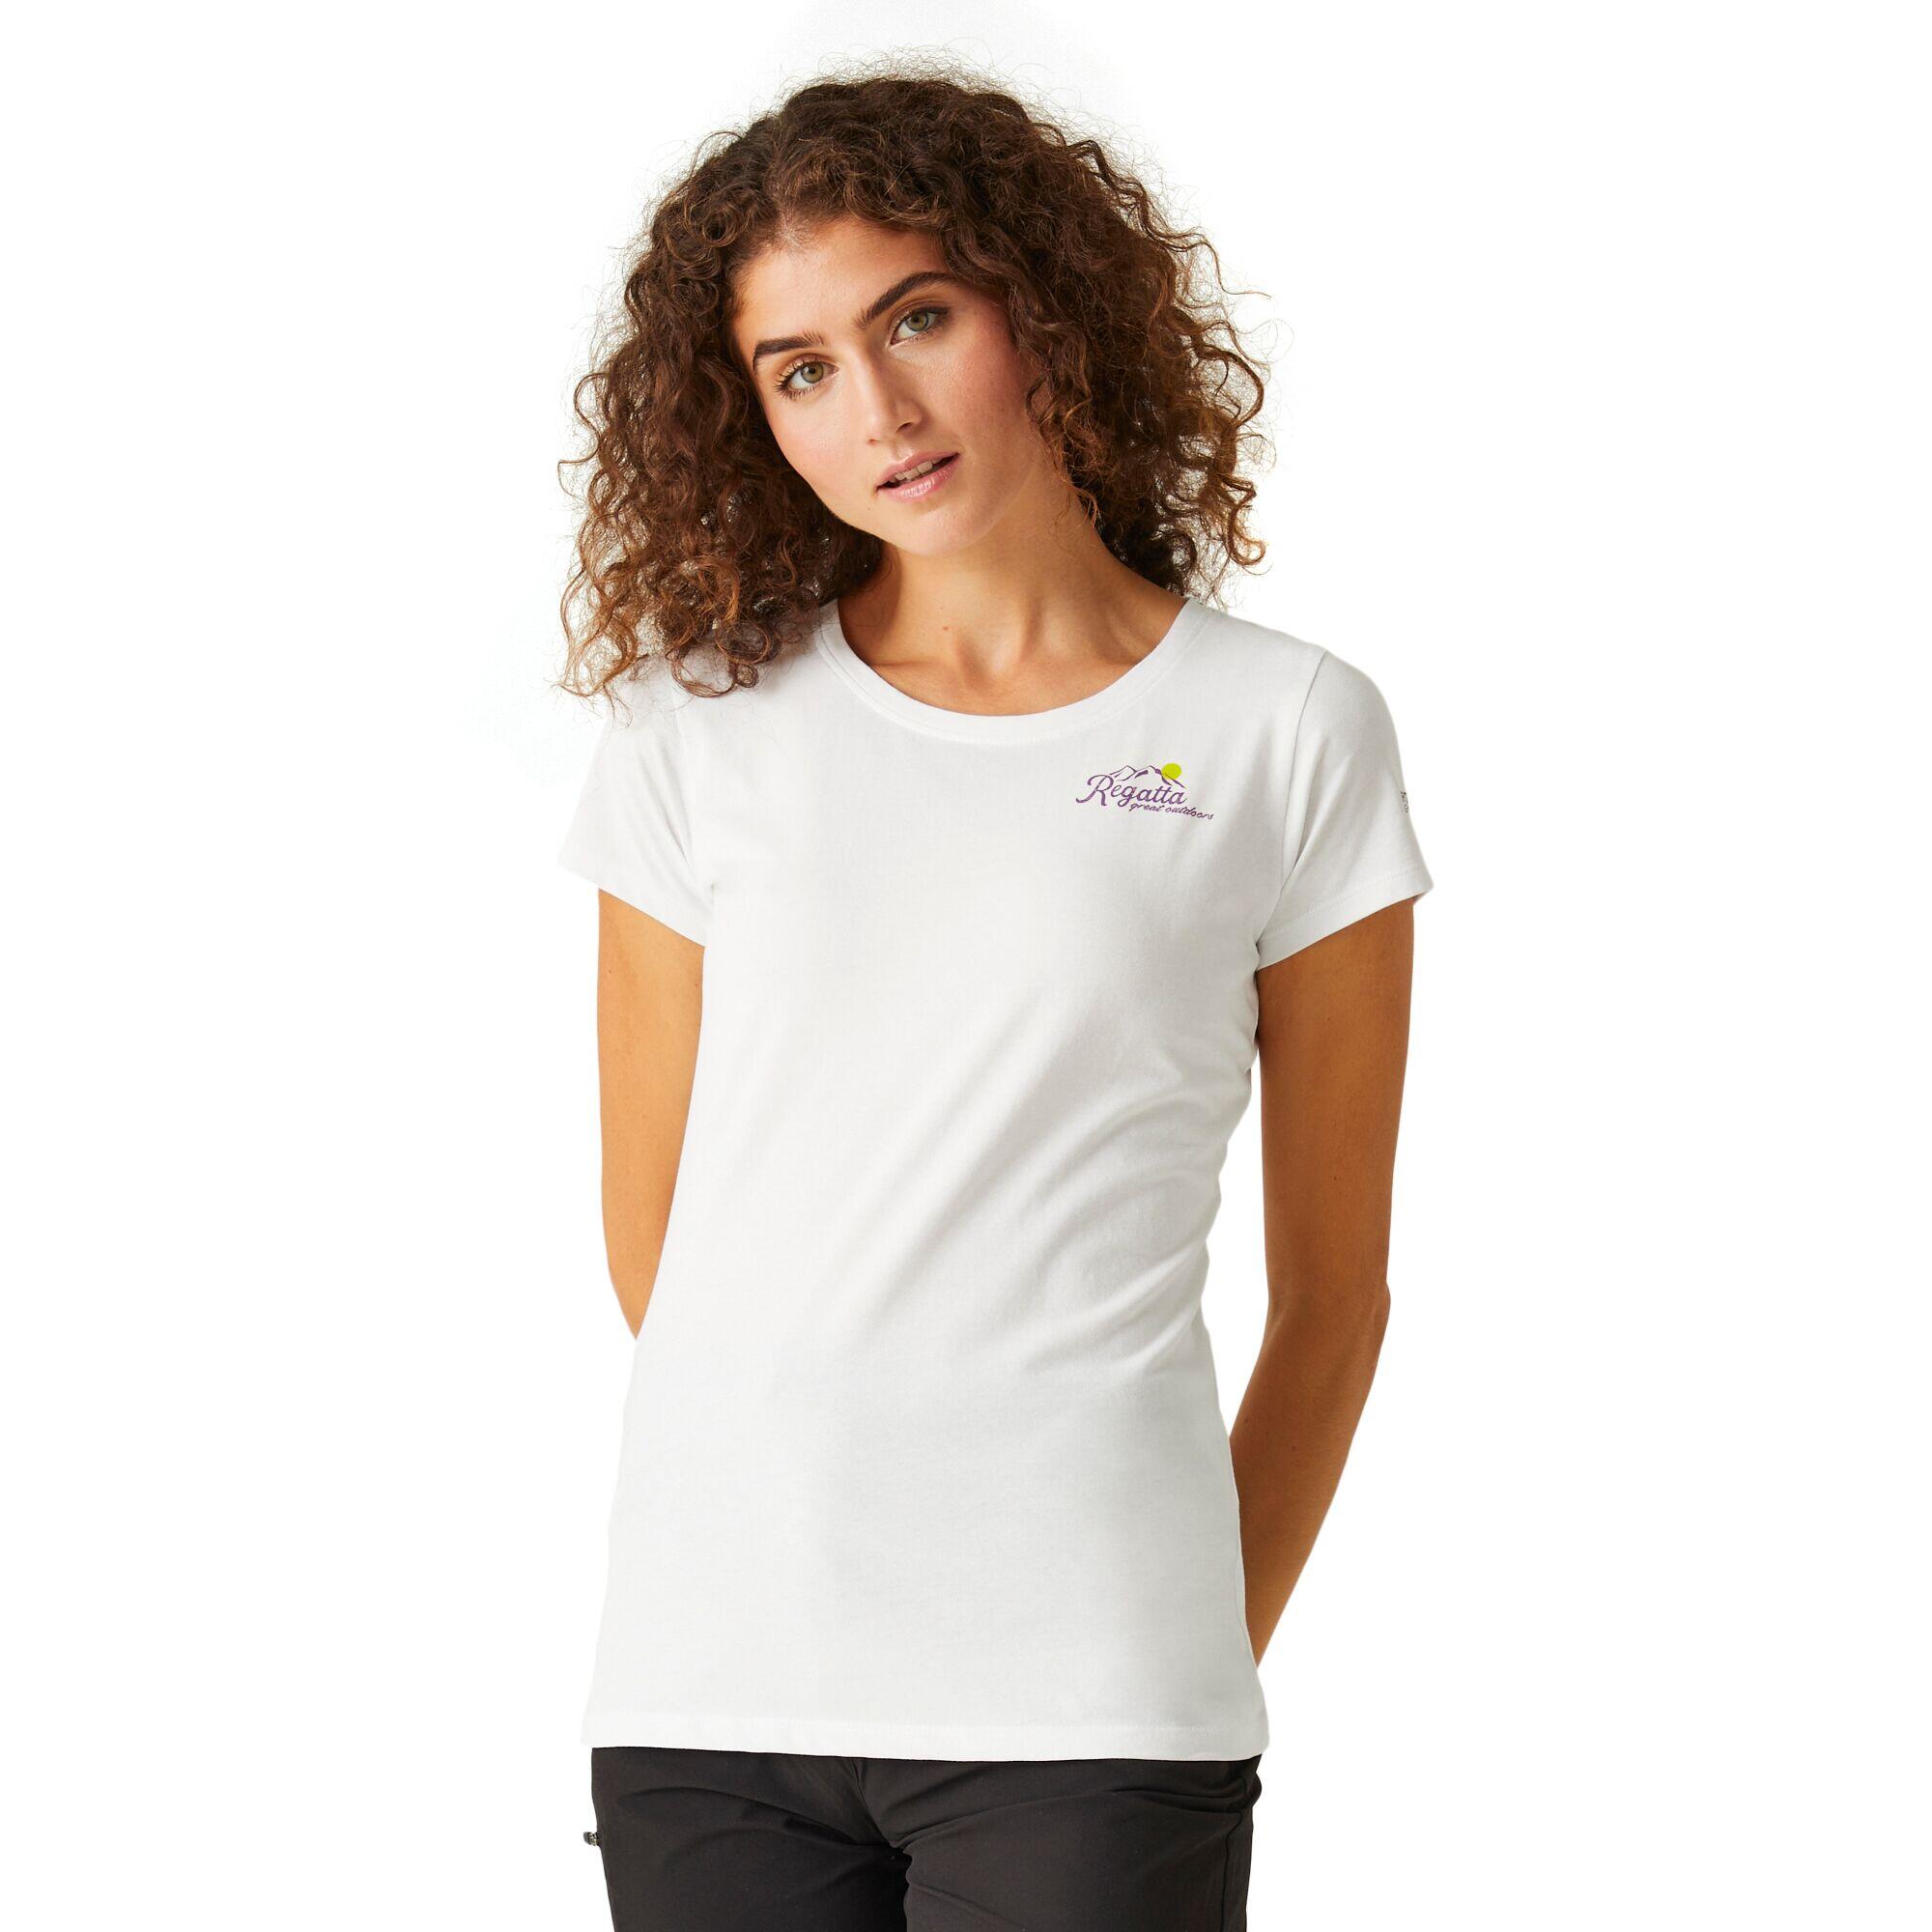 Womens/Ladies Breezed IV Back Print TShirt (White) 4/5